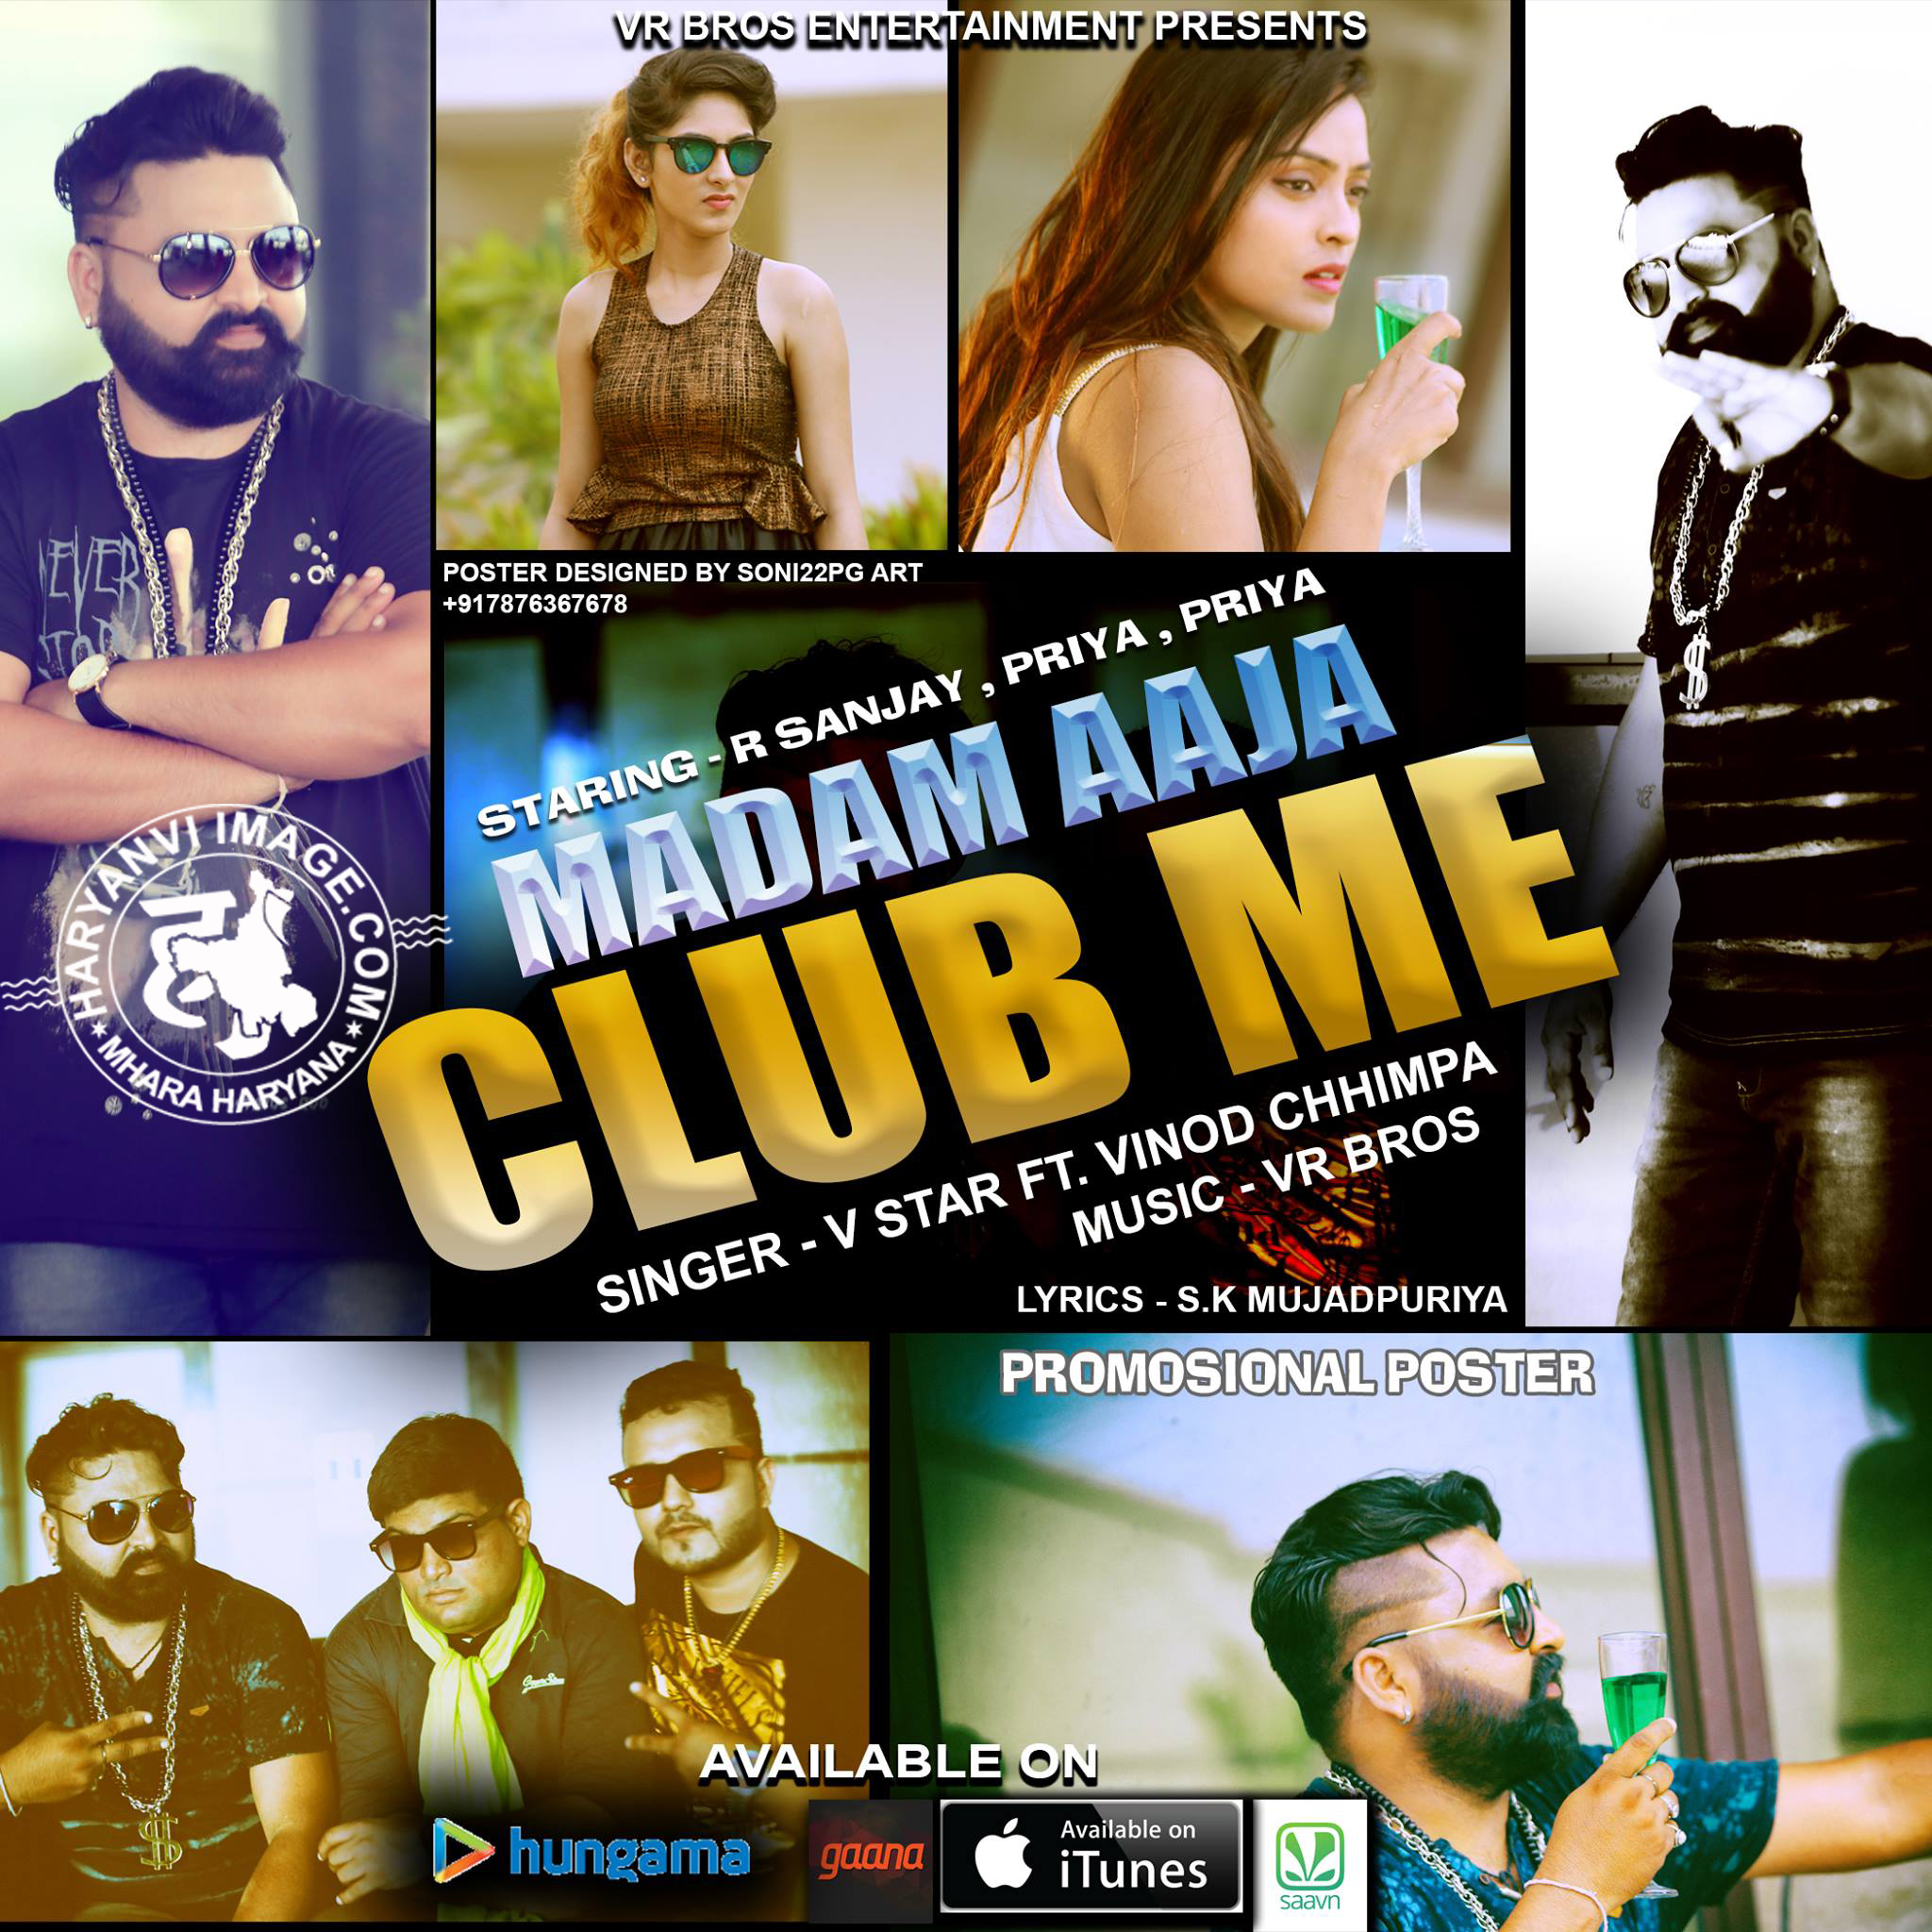 Madam Aaja Club Me - VR Bros